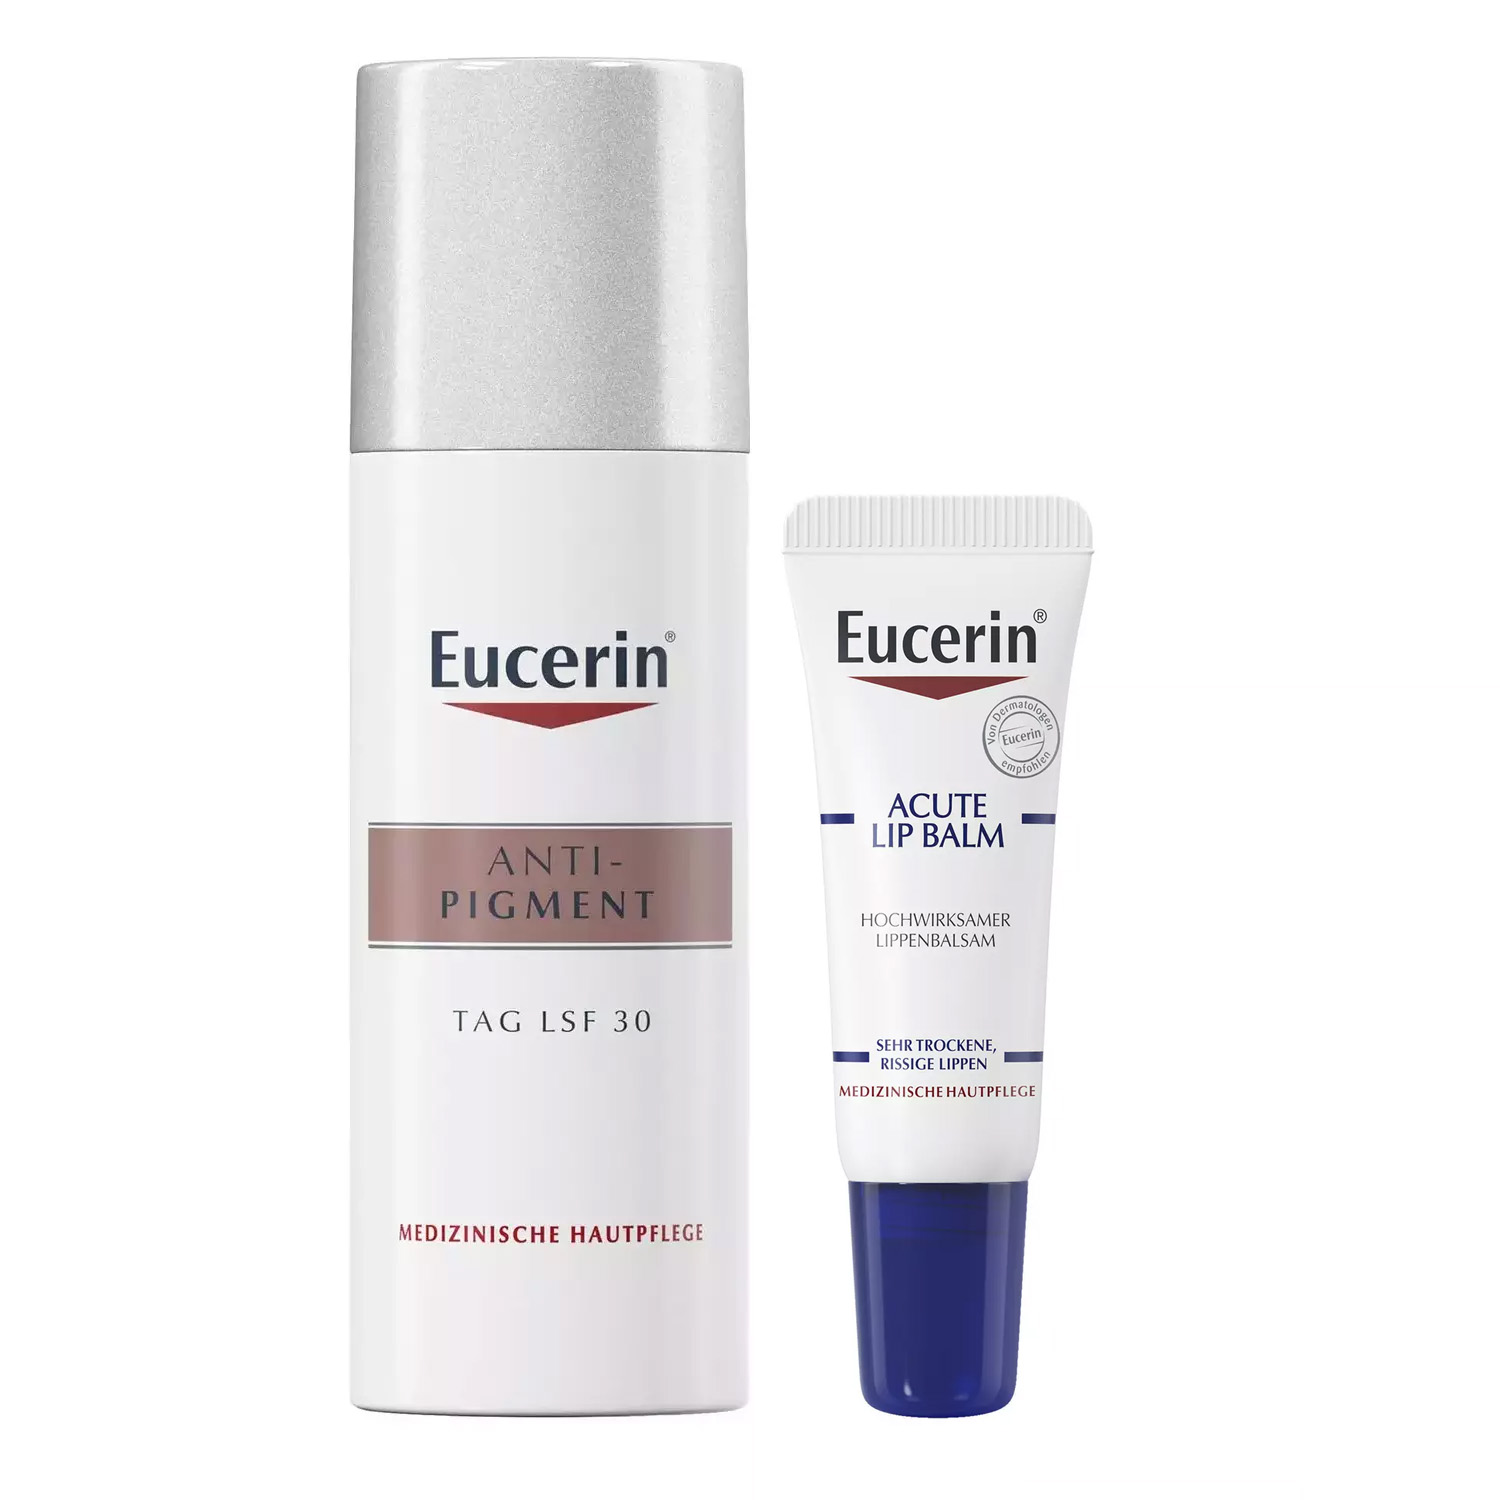 Eucerin Набор для ухода за кожей: бальзам для губ, 10 мл + крем дневной SPF30+, 50 мл (Eucerin, Anti-Pigment)